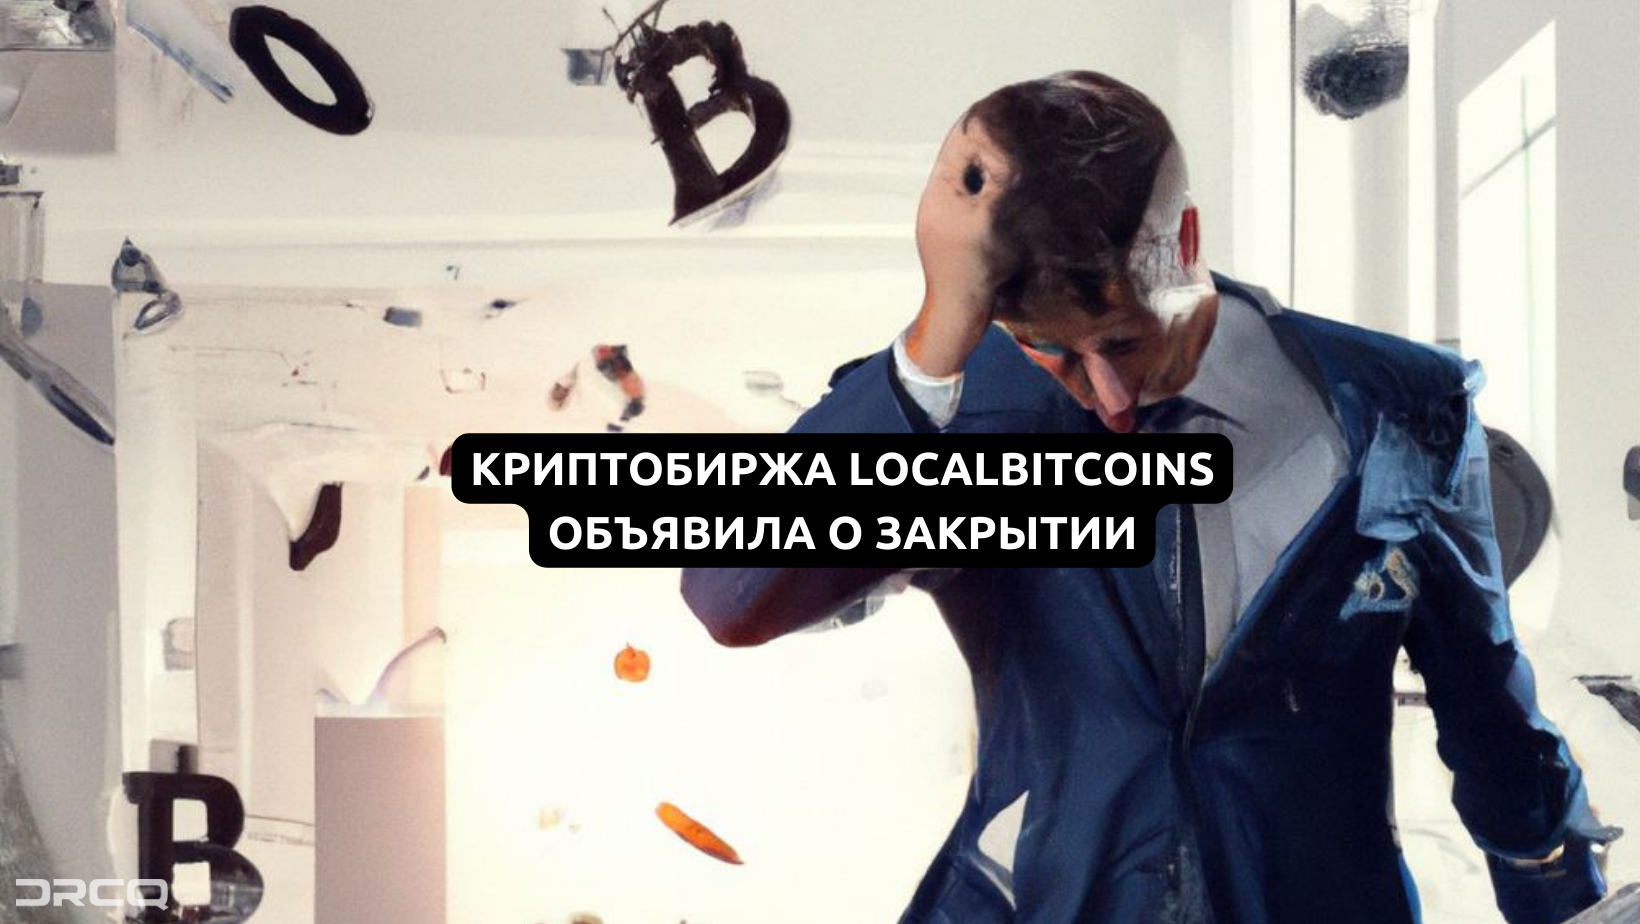 Популярная криптобиржа LocalBitcoins объявила о закрытии